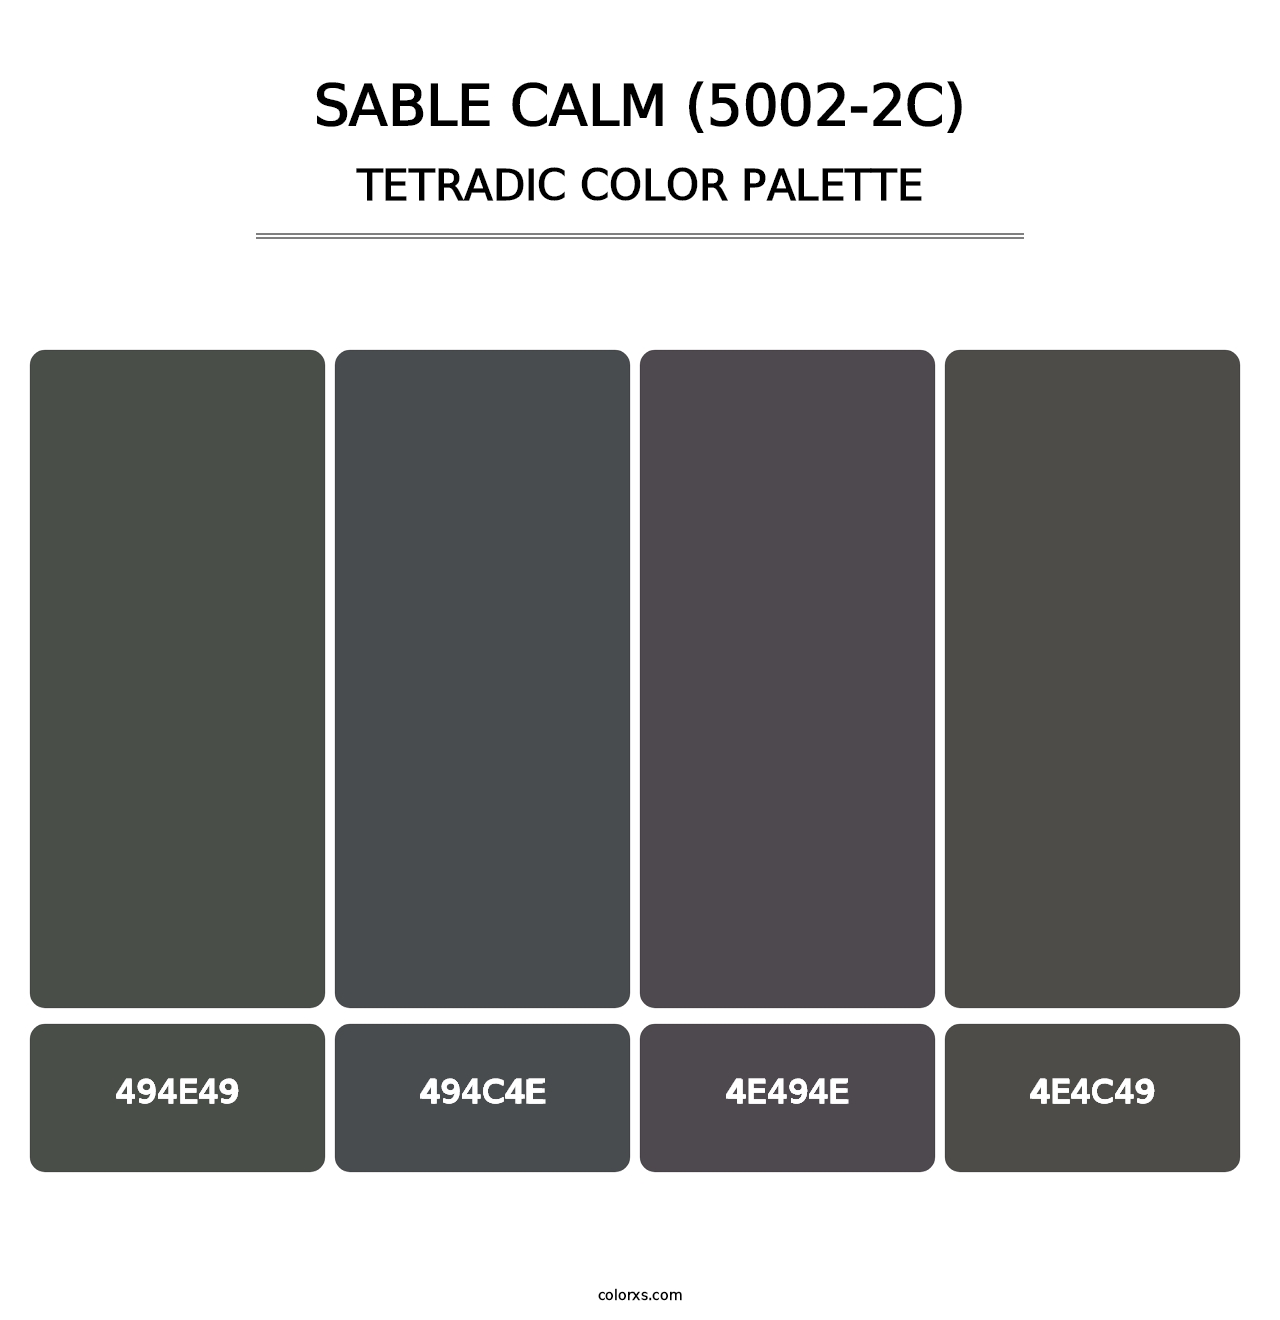 Sable Calm (5002-2C) - Tetradic Color Palette